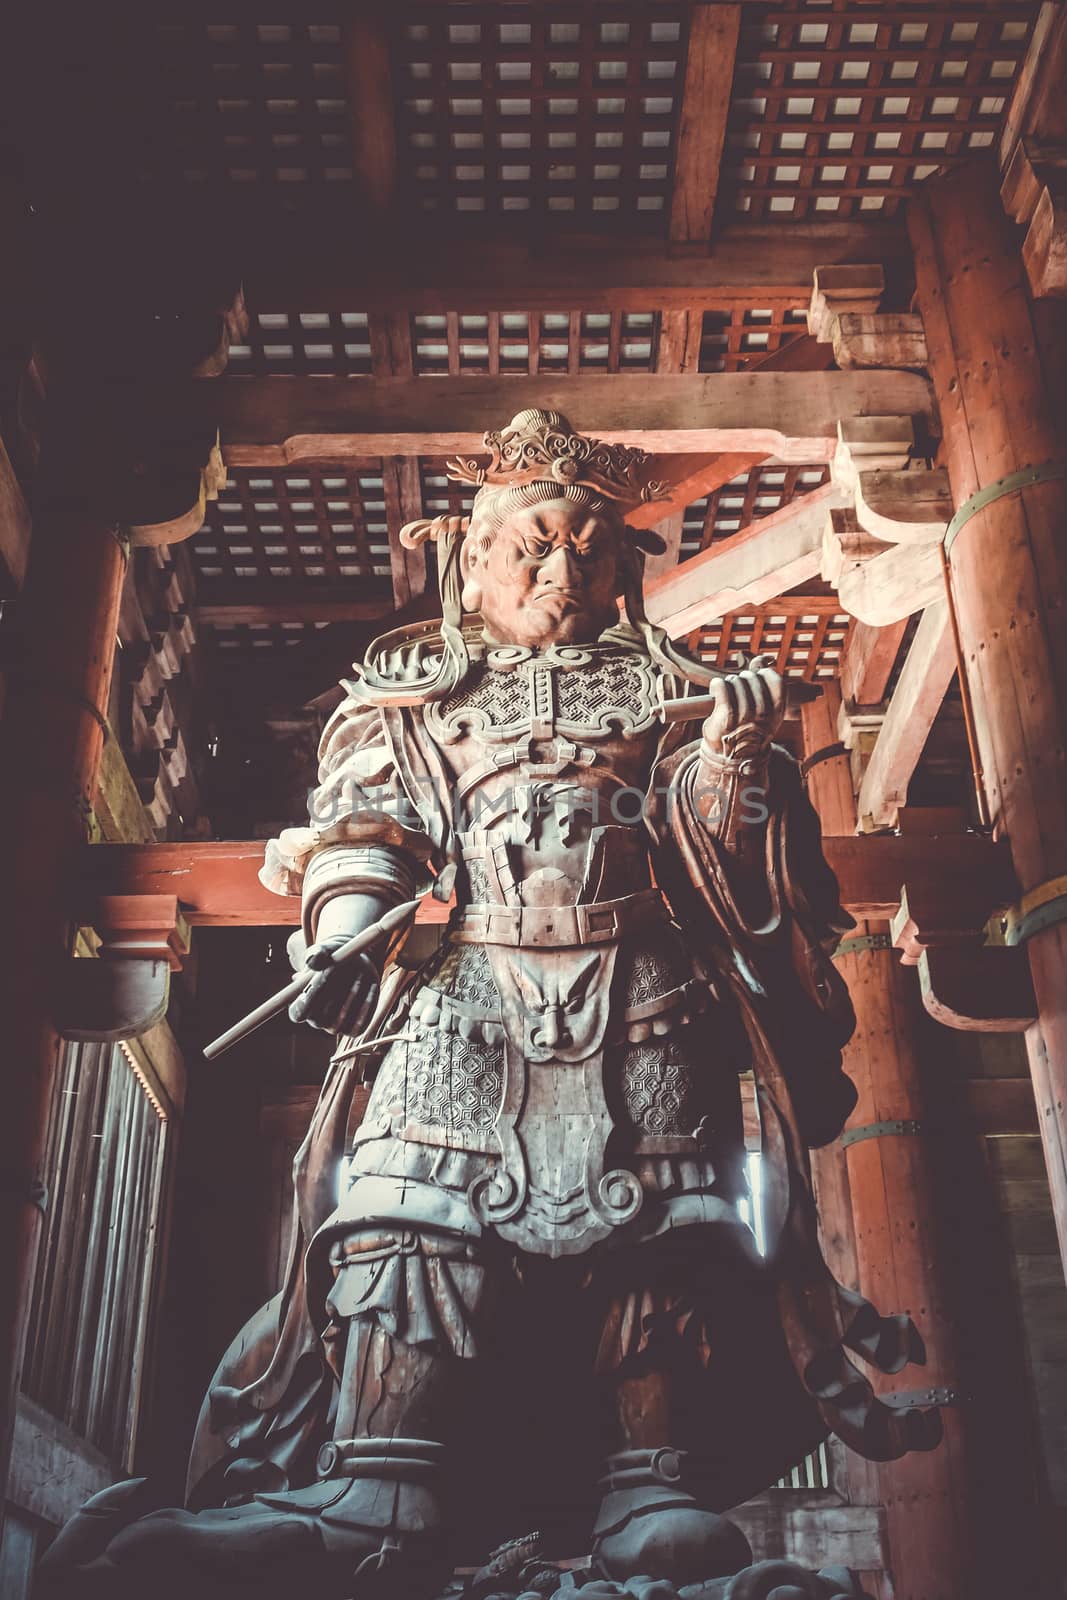 Komokuten guardian statue in Daibutsu-den Todai-ji temple, Nara, Japan